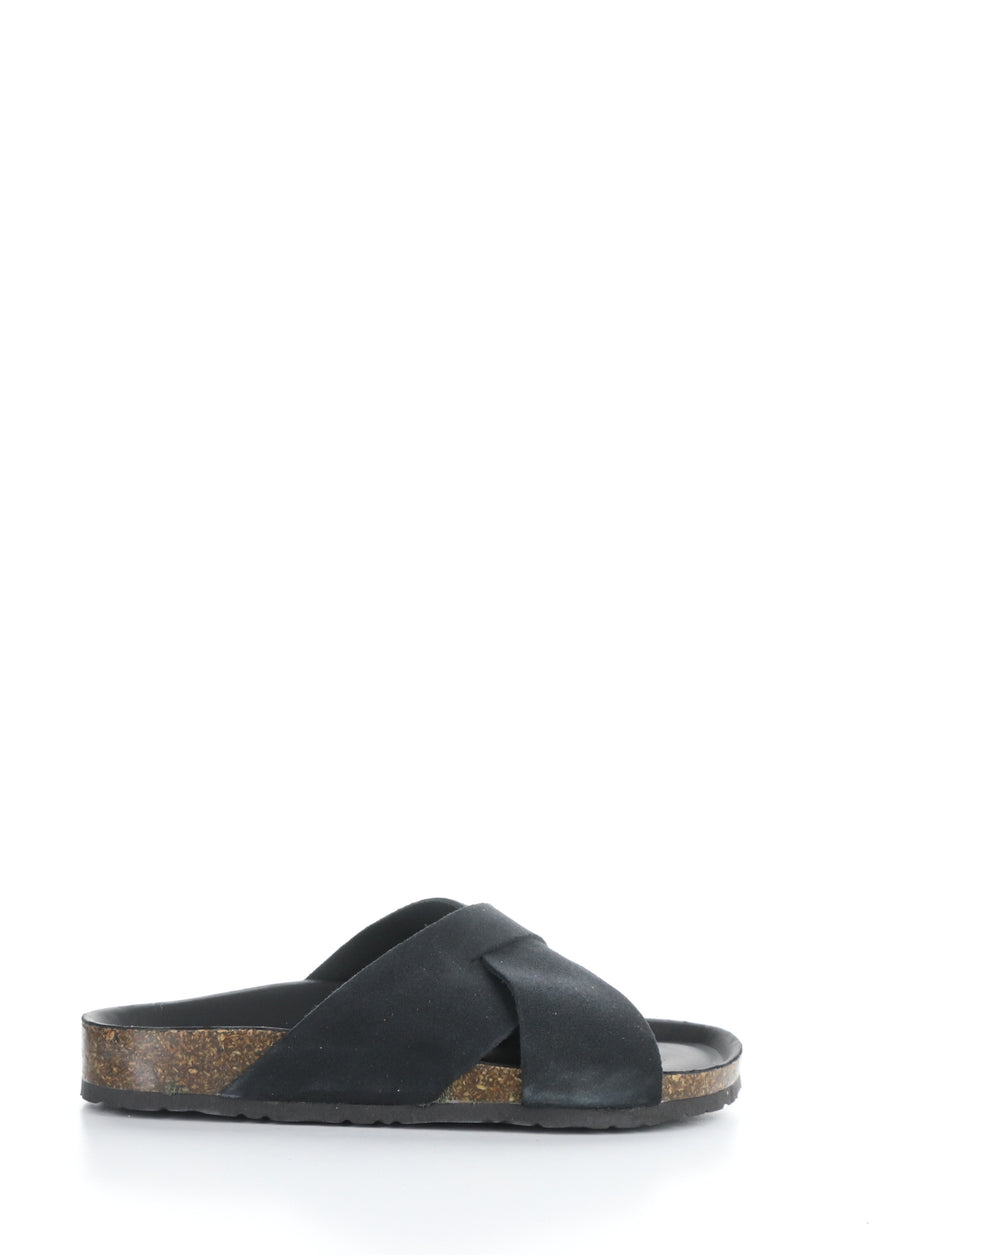 MAISIE BLACK Slip-on Sandals